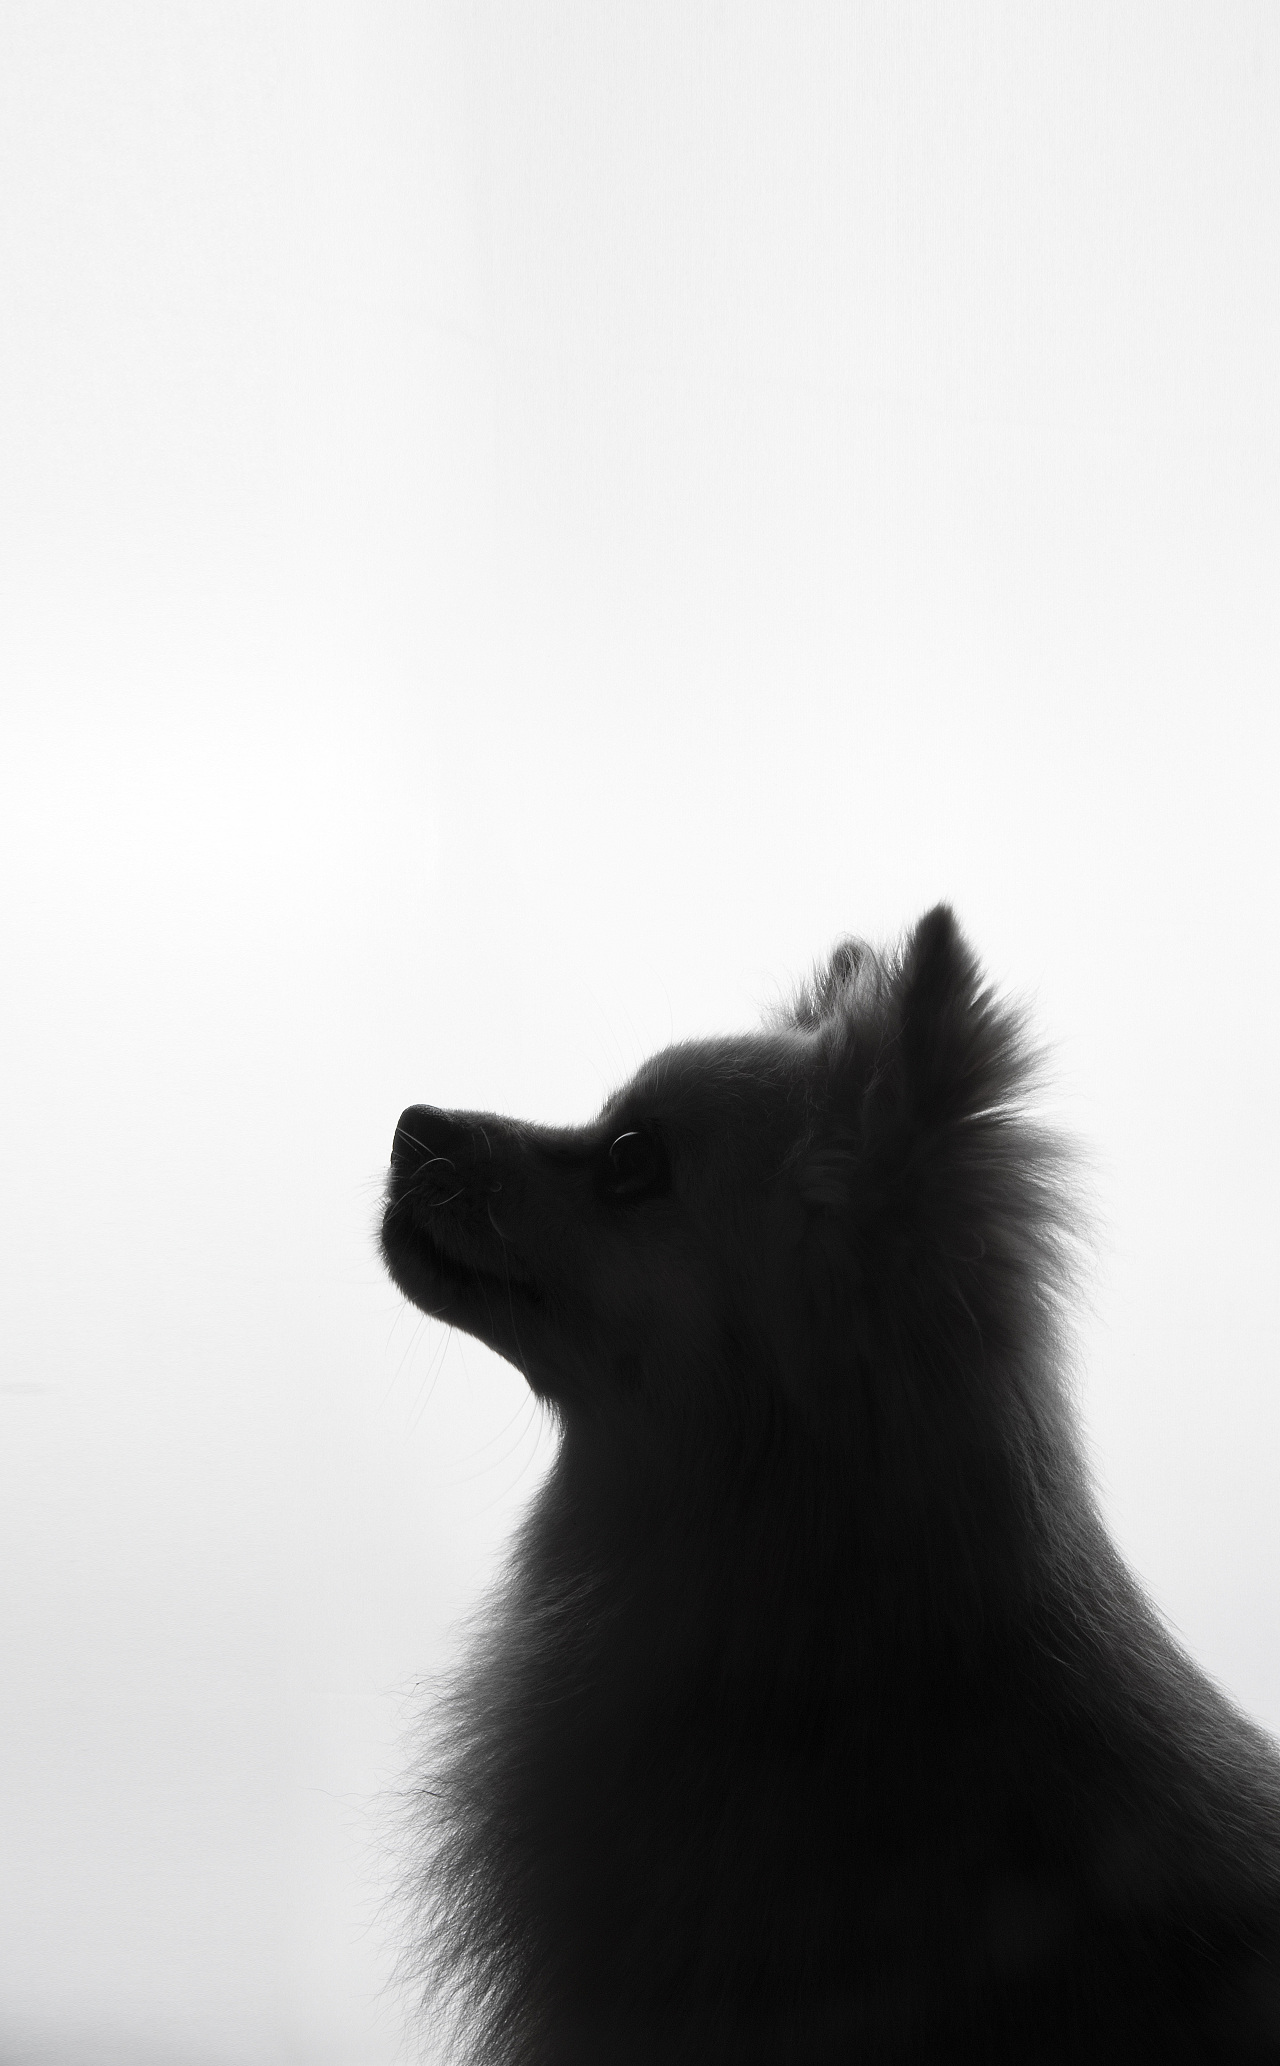 Black Short Coated Dog · Free Stock Photo